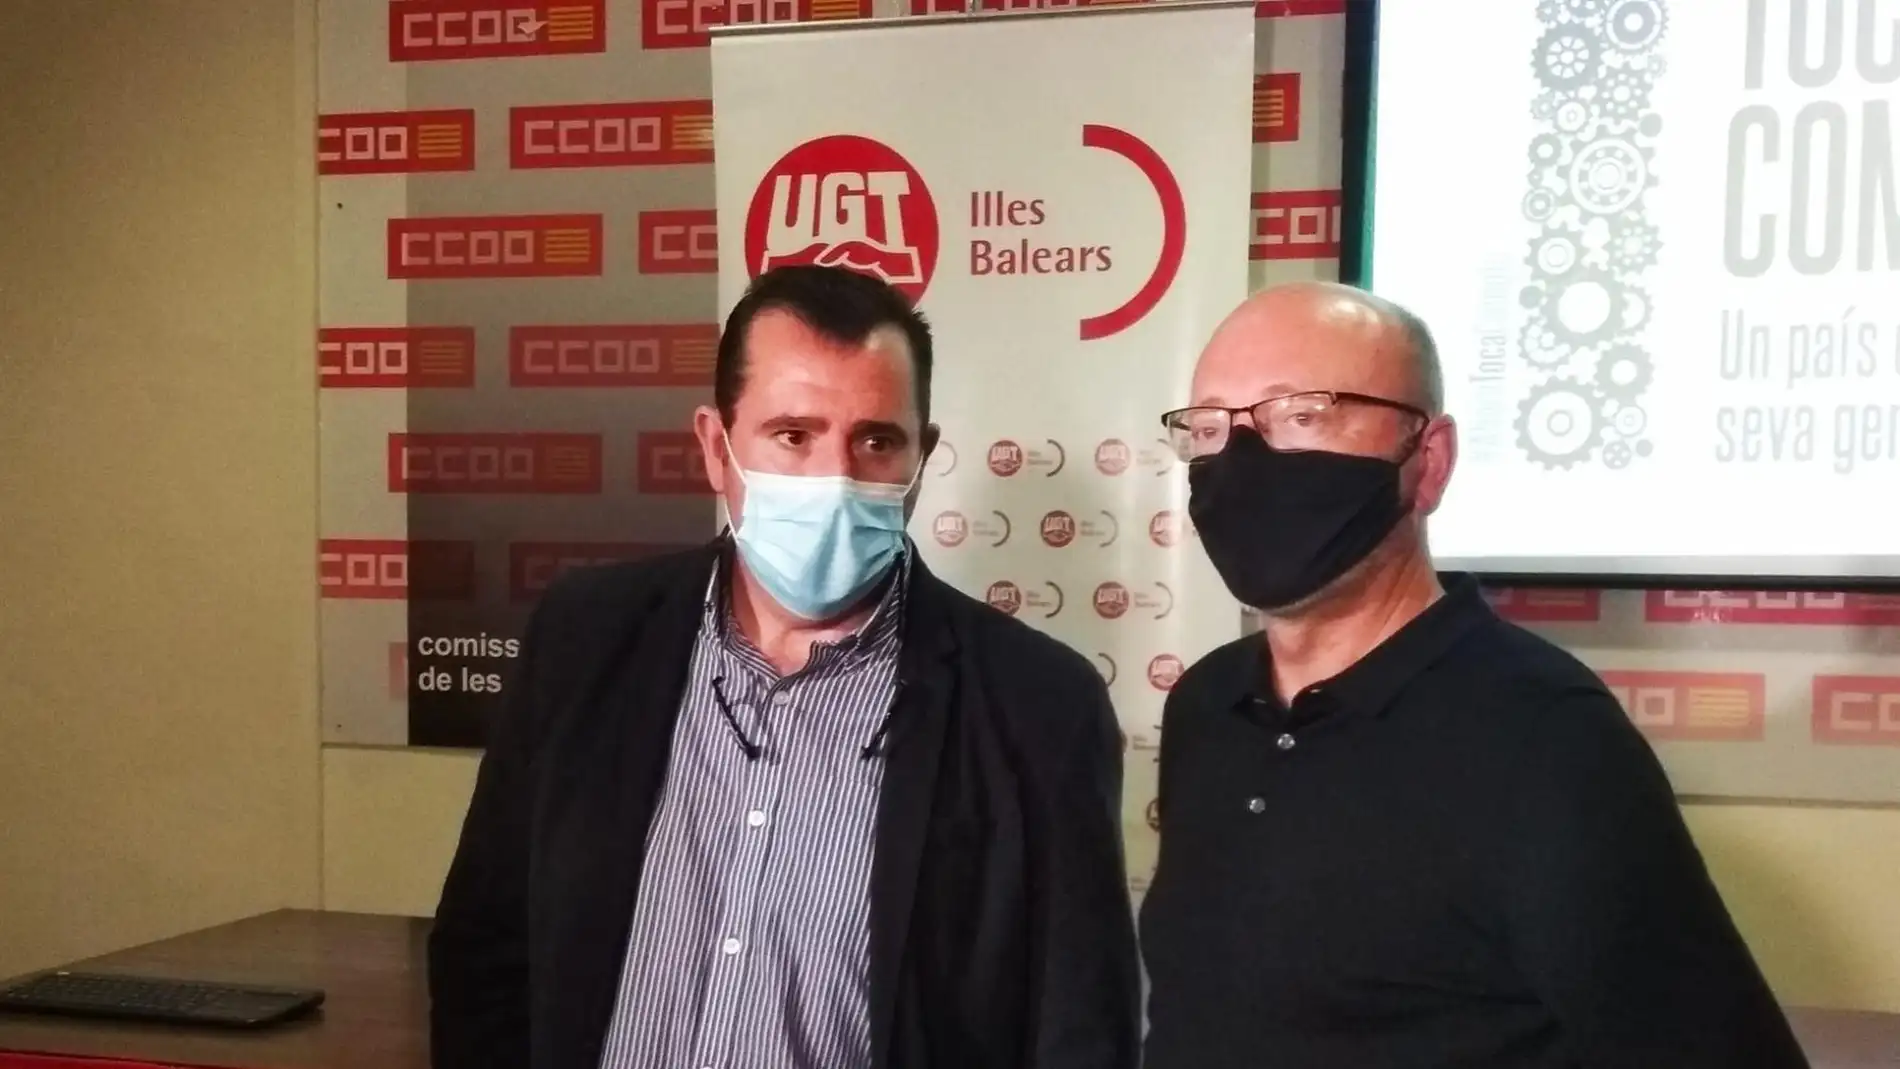 CCOO y UGT Baleares protestarán el 1 de mayo para que la salida de la crisis "no sea a costa de los trabajadores"